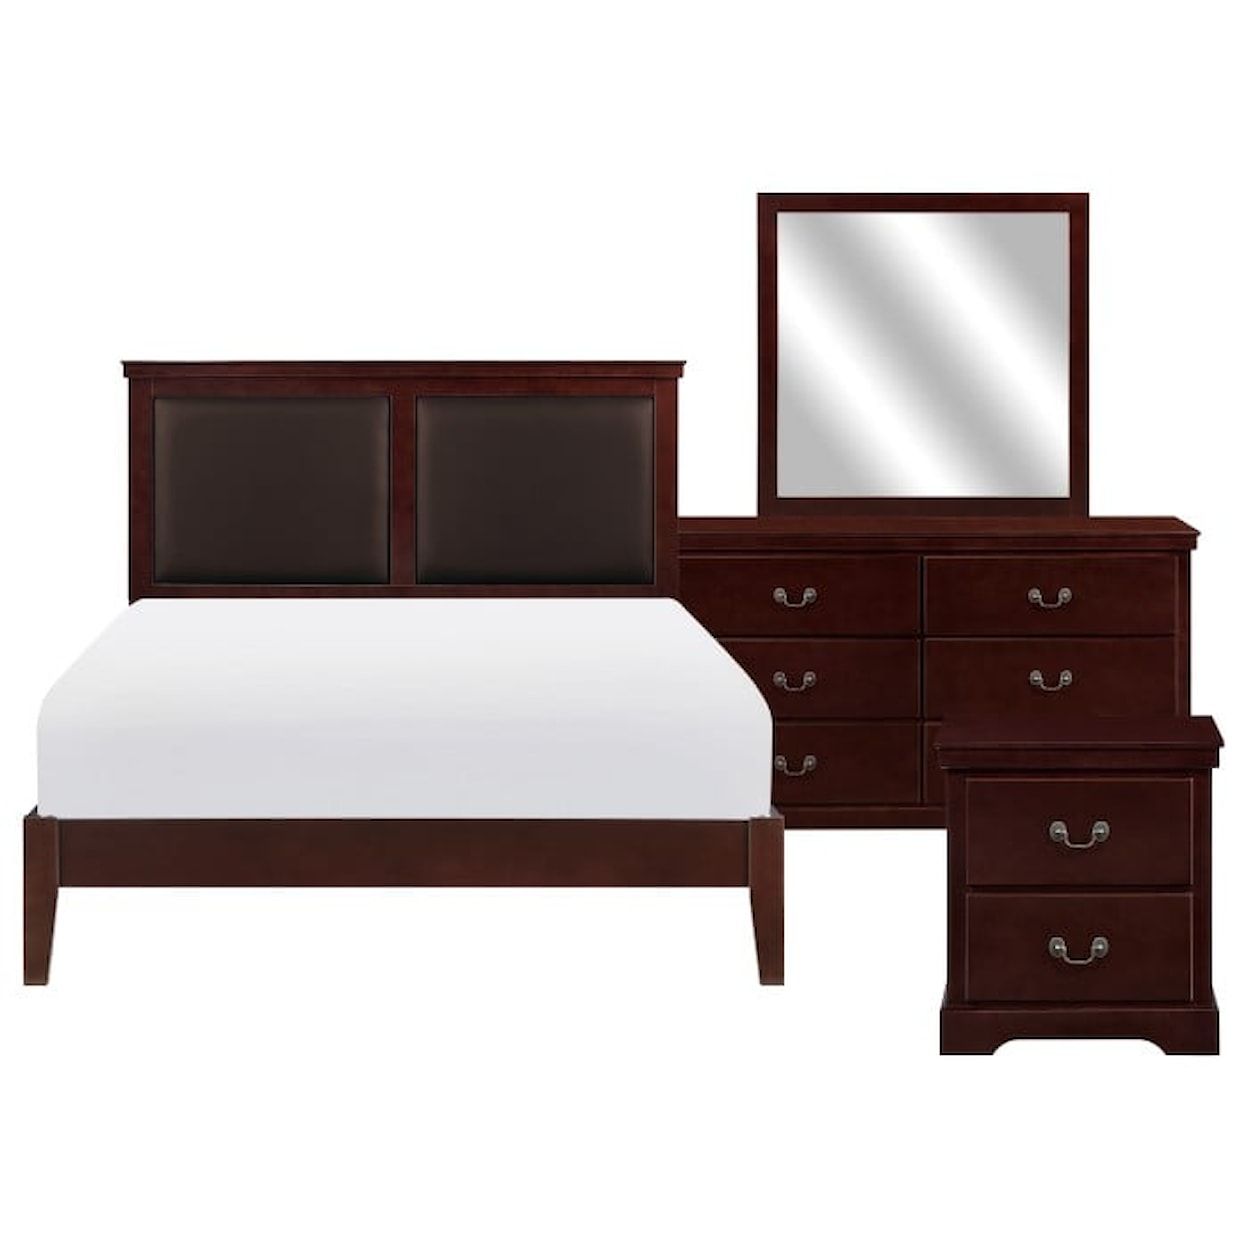 Homelegance Seabright 4-Piece Queen Bedroom Set